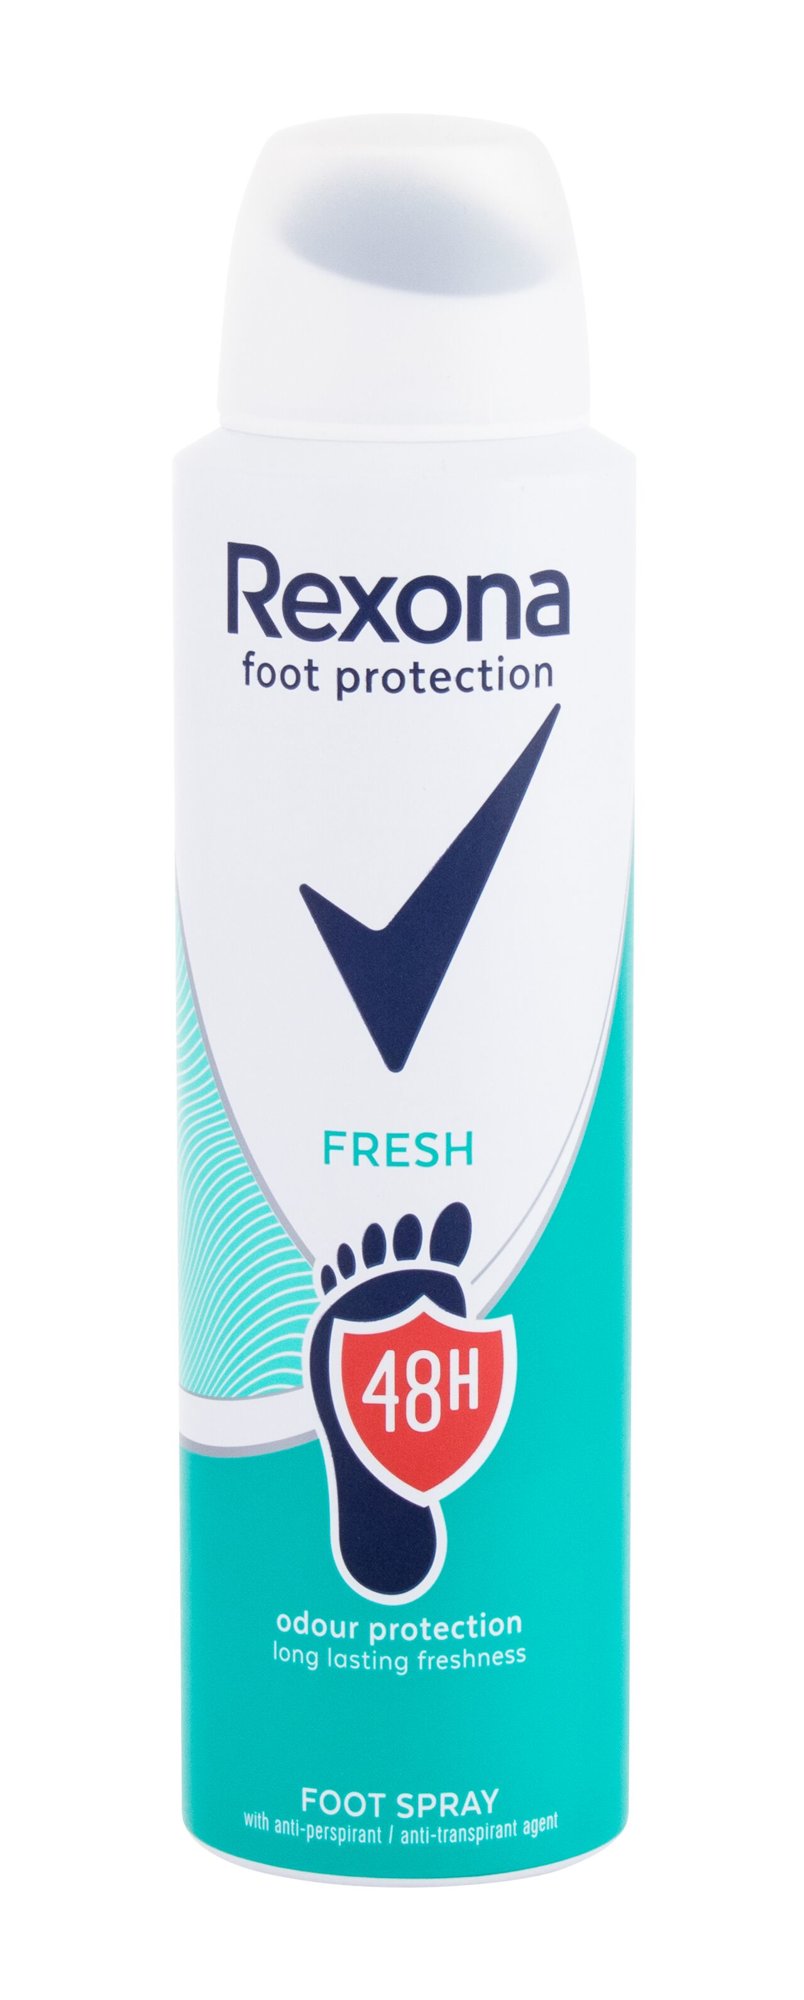 Rexona Foot Protection Fresh Kojų purškiklis